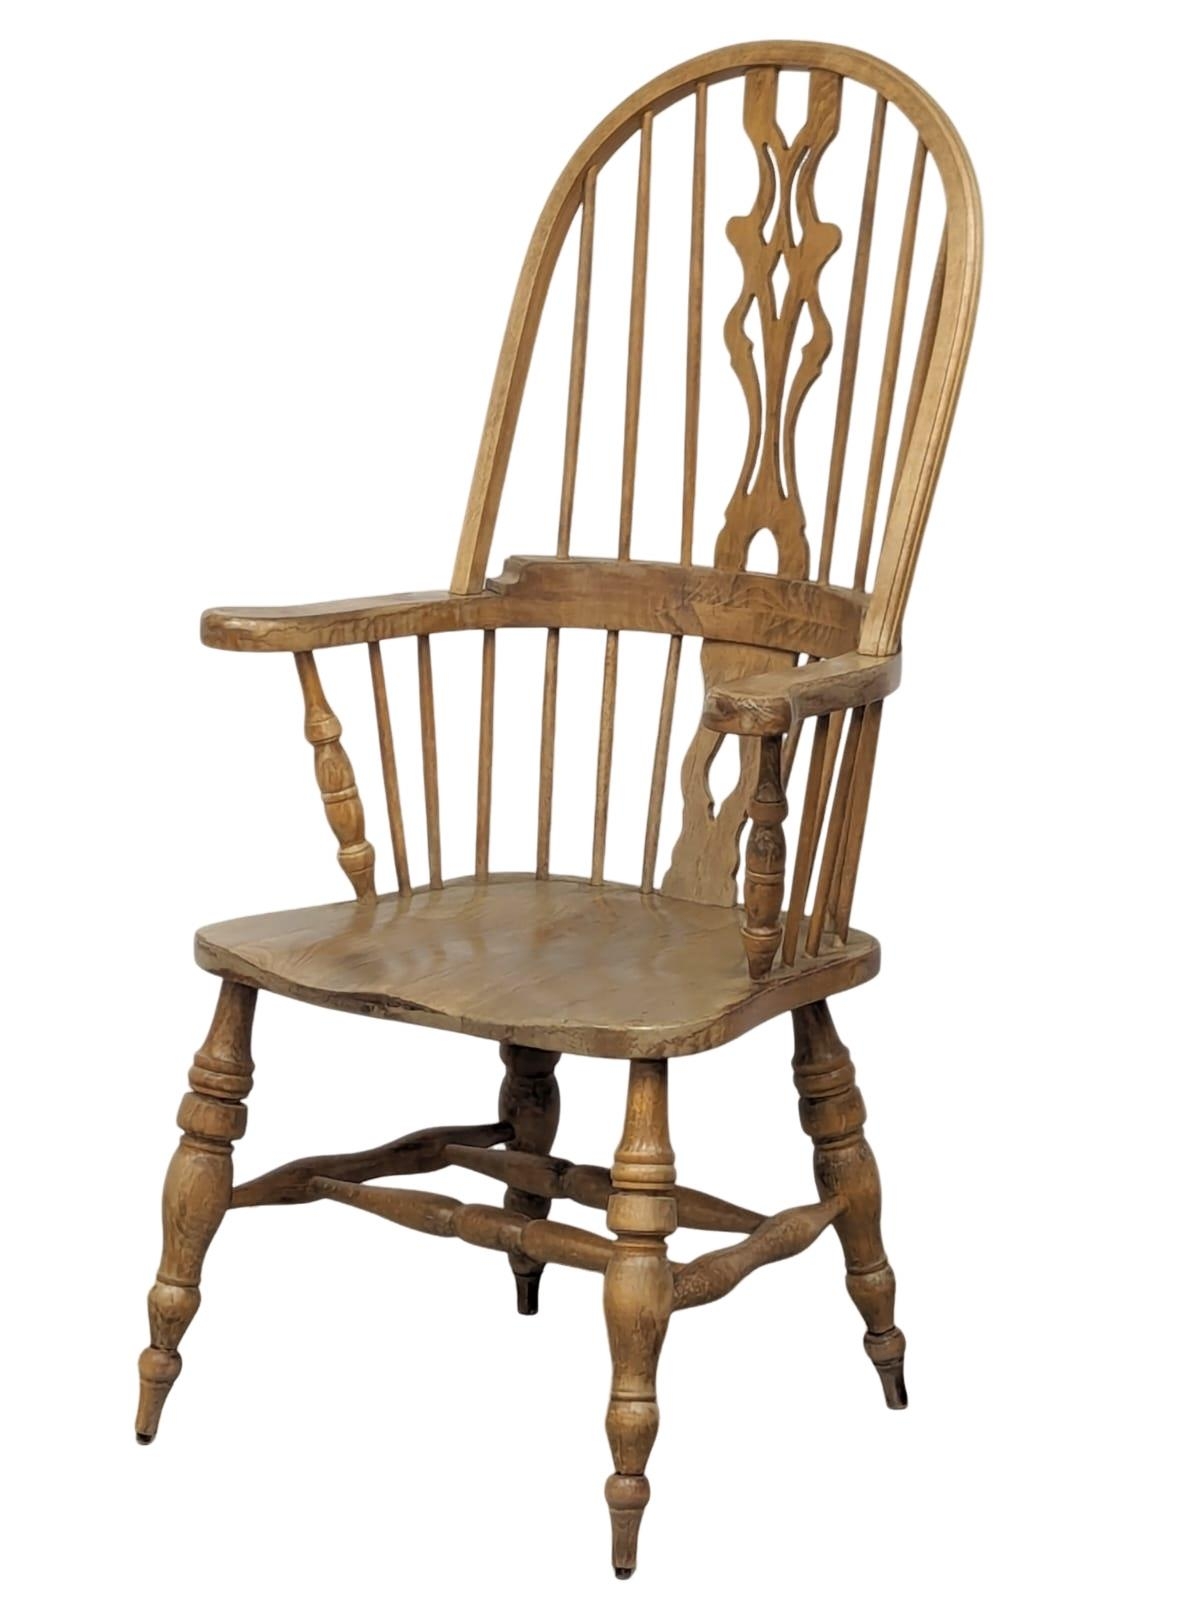 A 19th Century style Windsor armchair.